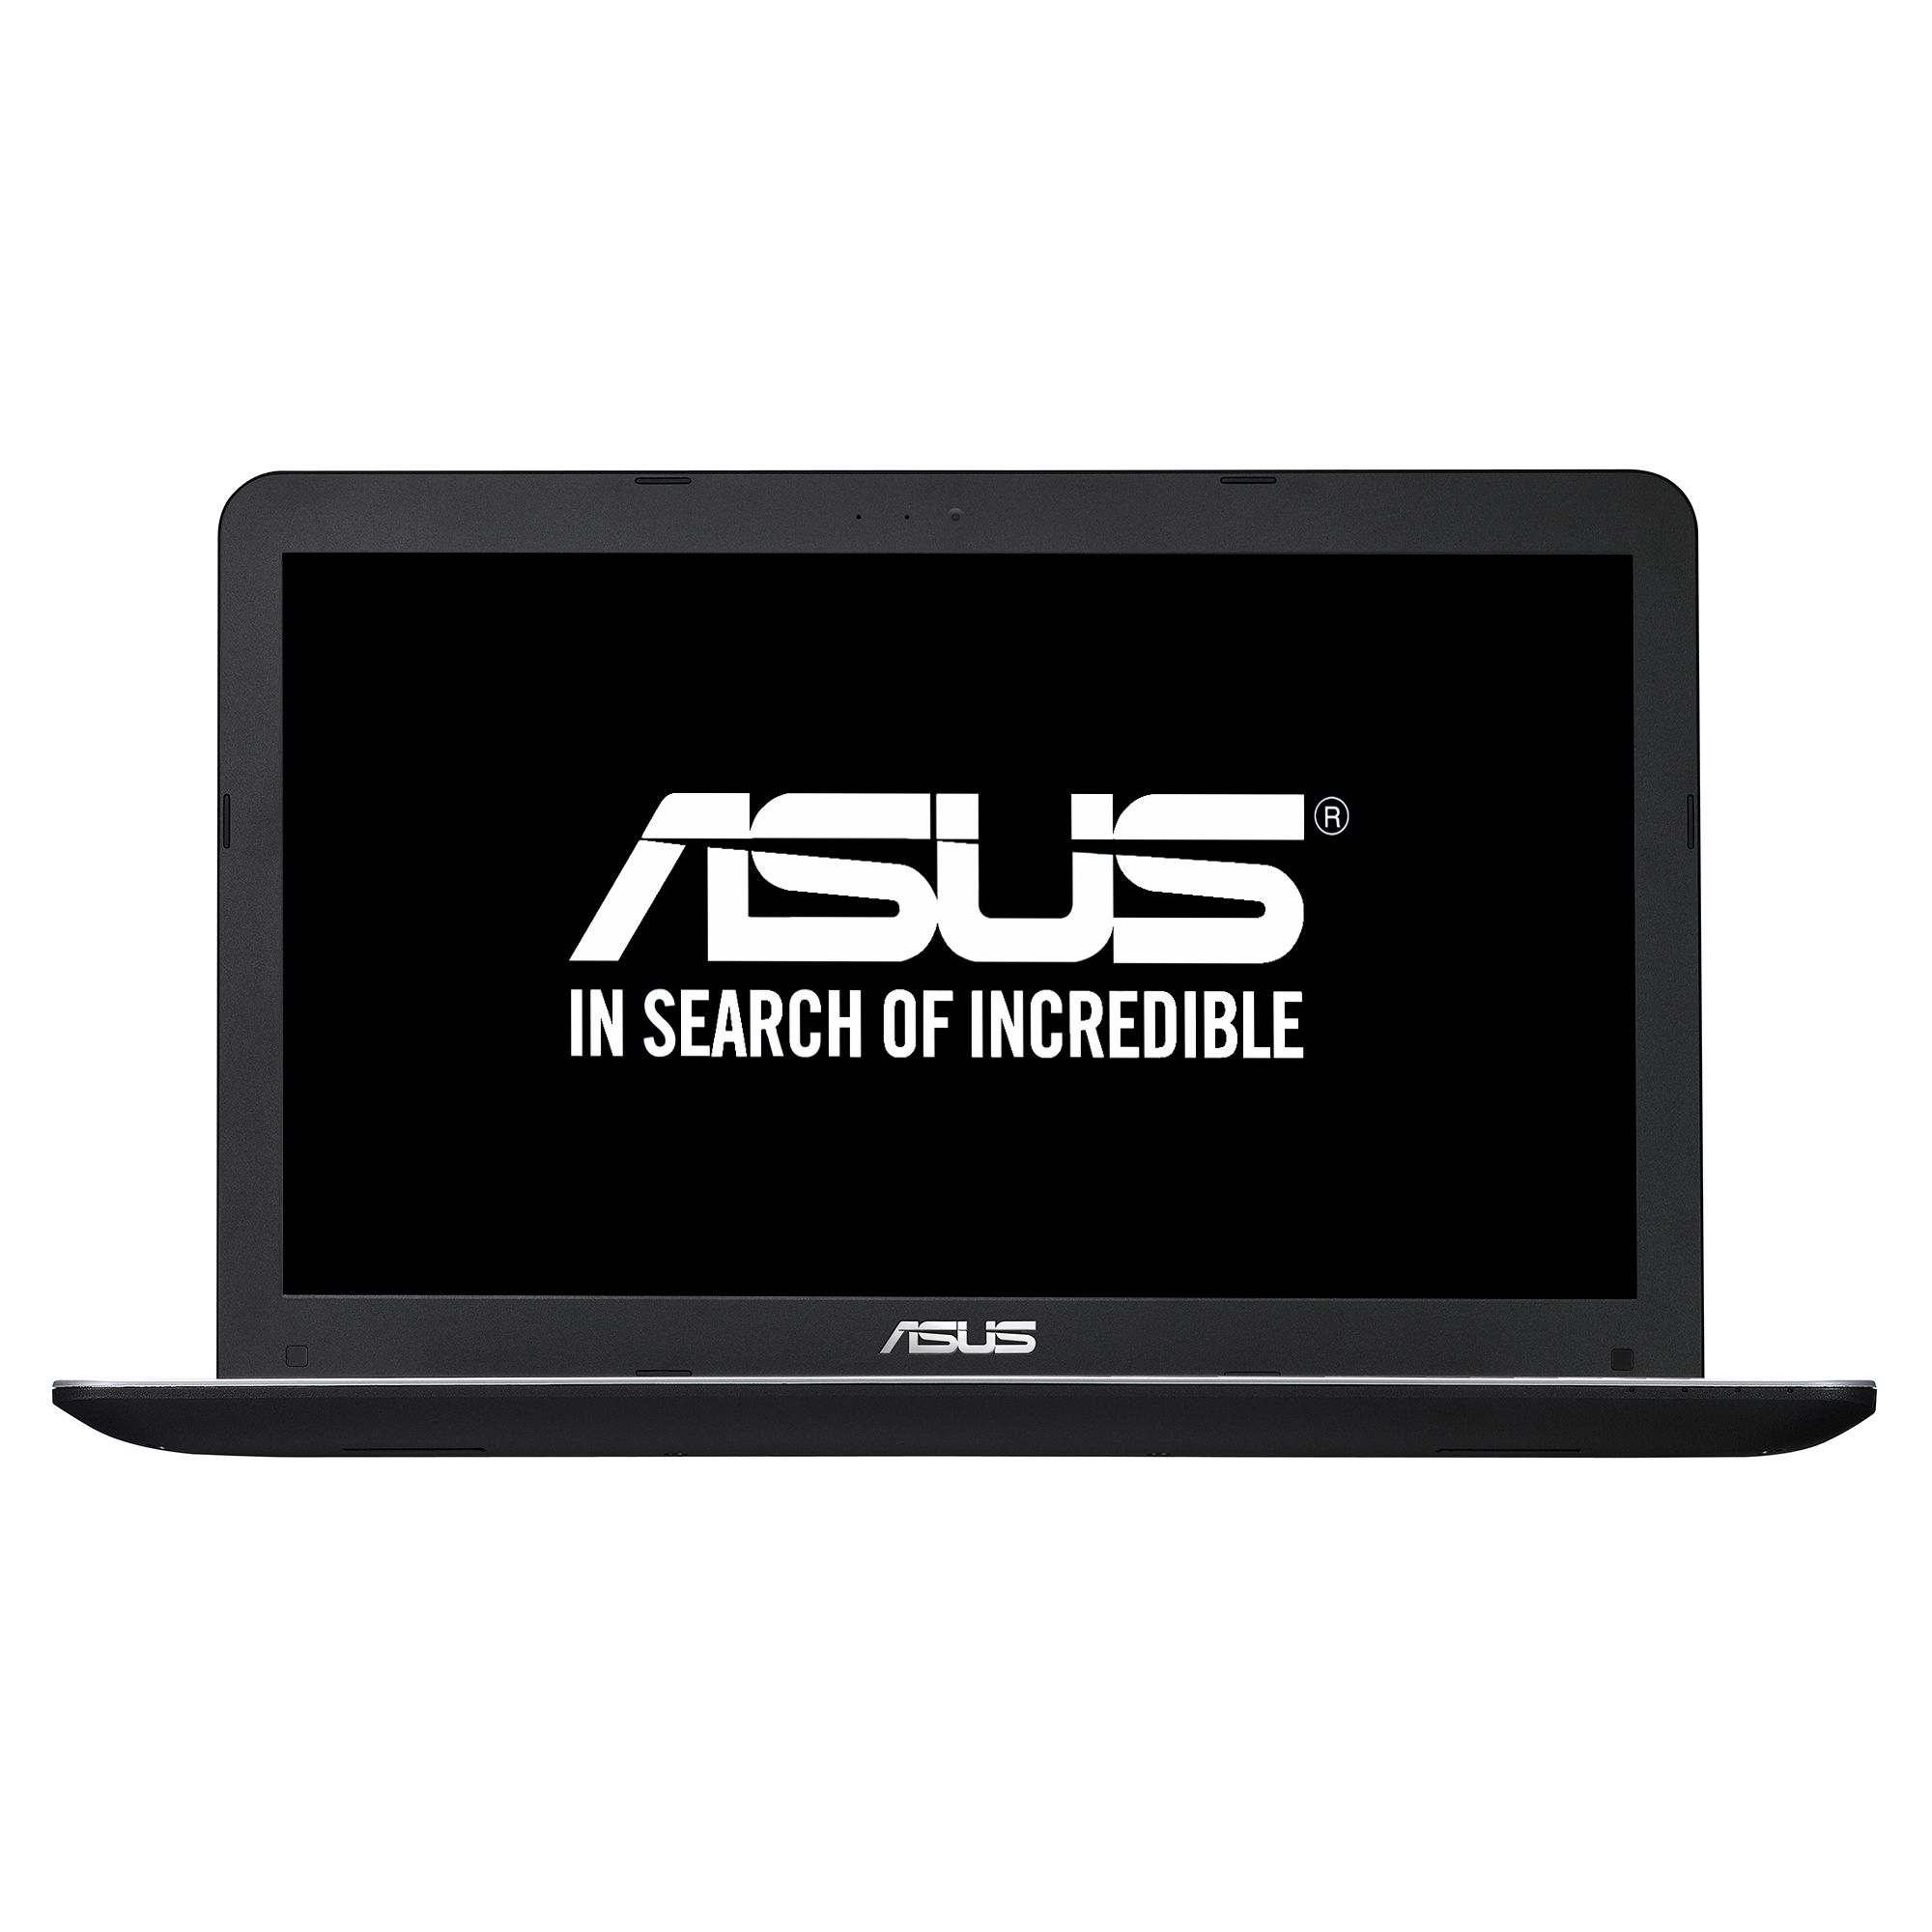  Laptop Asus X555LJ-XX013D, Intel Core i5-5200U, 4GB DDR3, HDD 500GB, nVidia GeForce 920M 2GB, Free DOS 